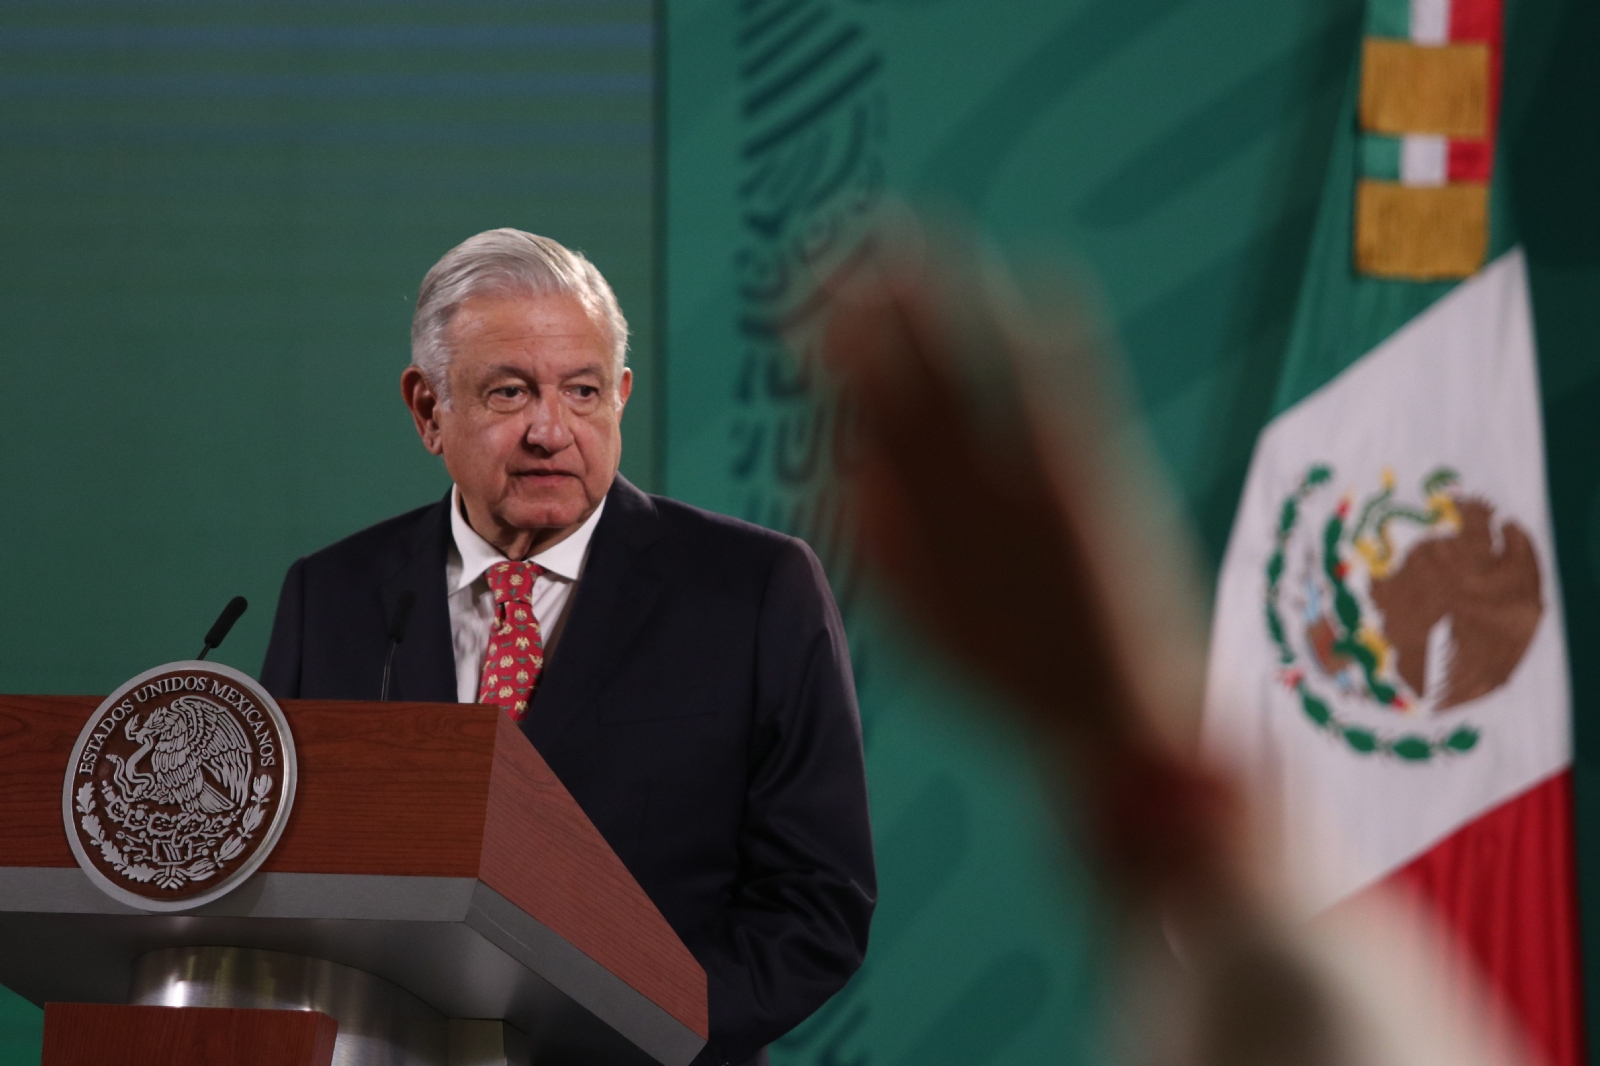 "Vamos a seguir invitando a otros gobernadores y dirigentes que han hecho un buen trabajo", adelanta el presidente López Obrador